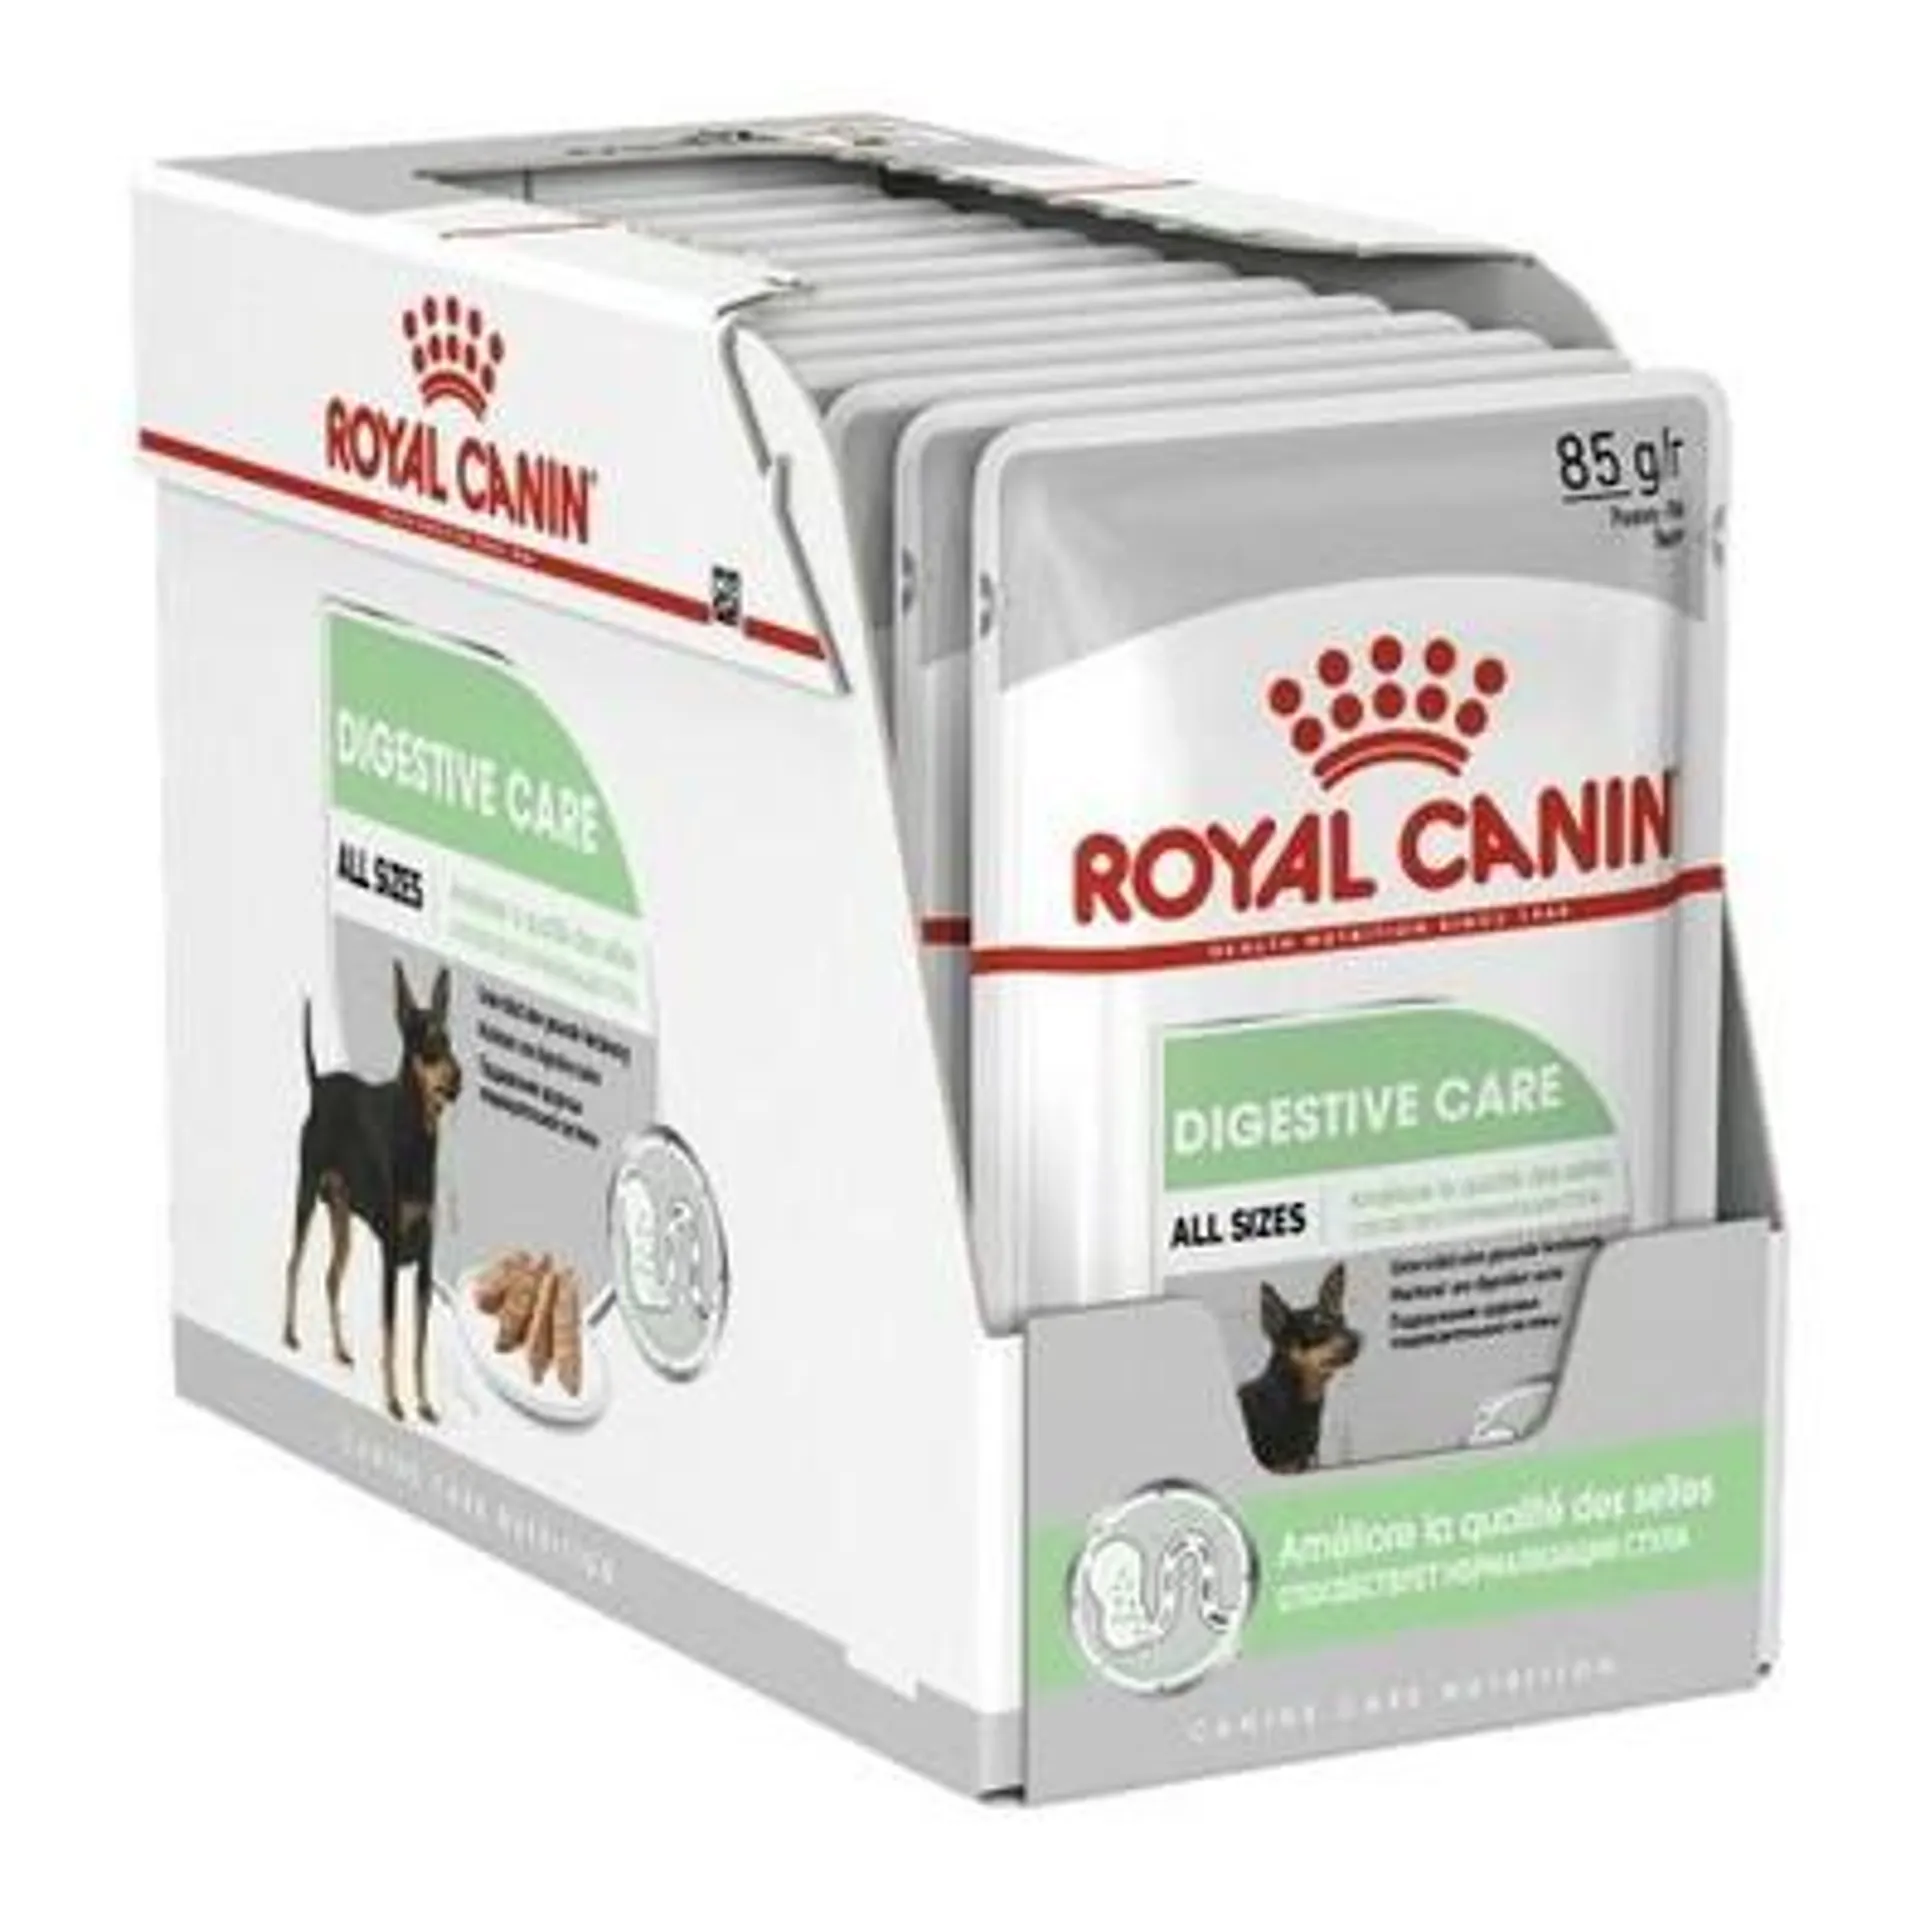 Royal Canin Digestive Care Loaf Wet Dog Food